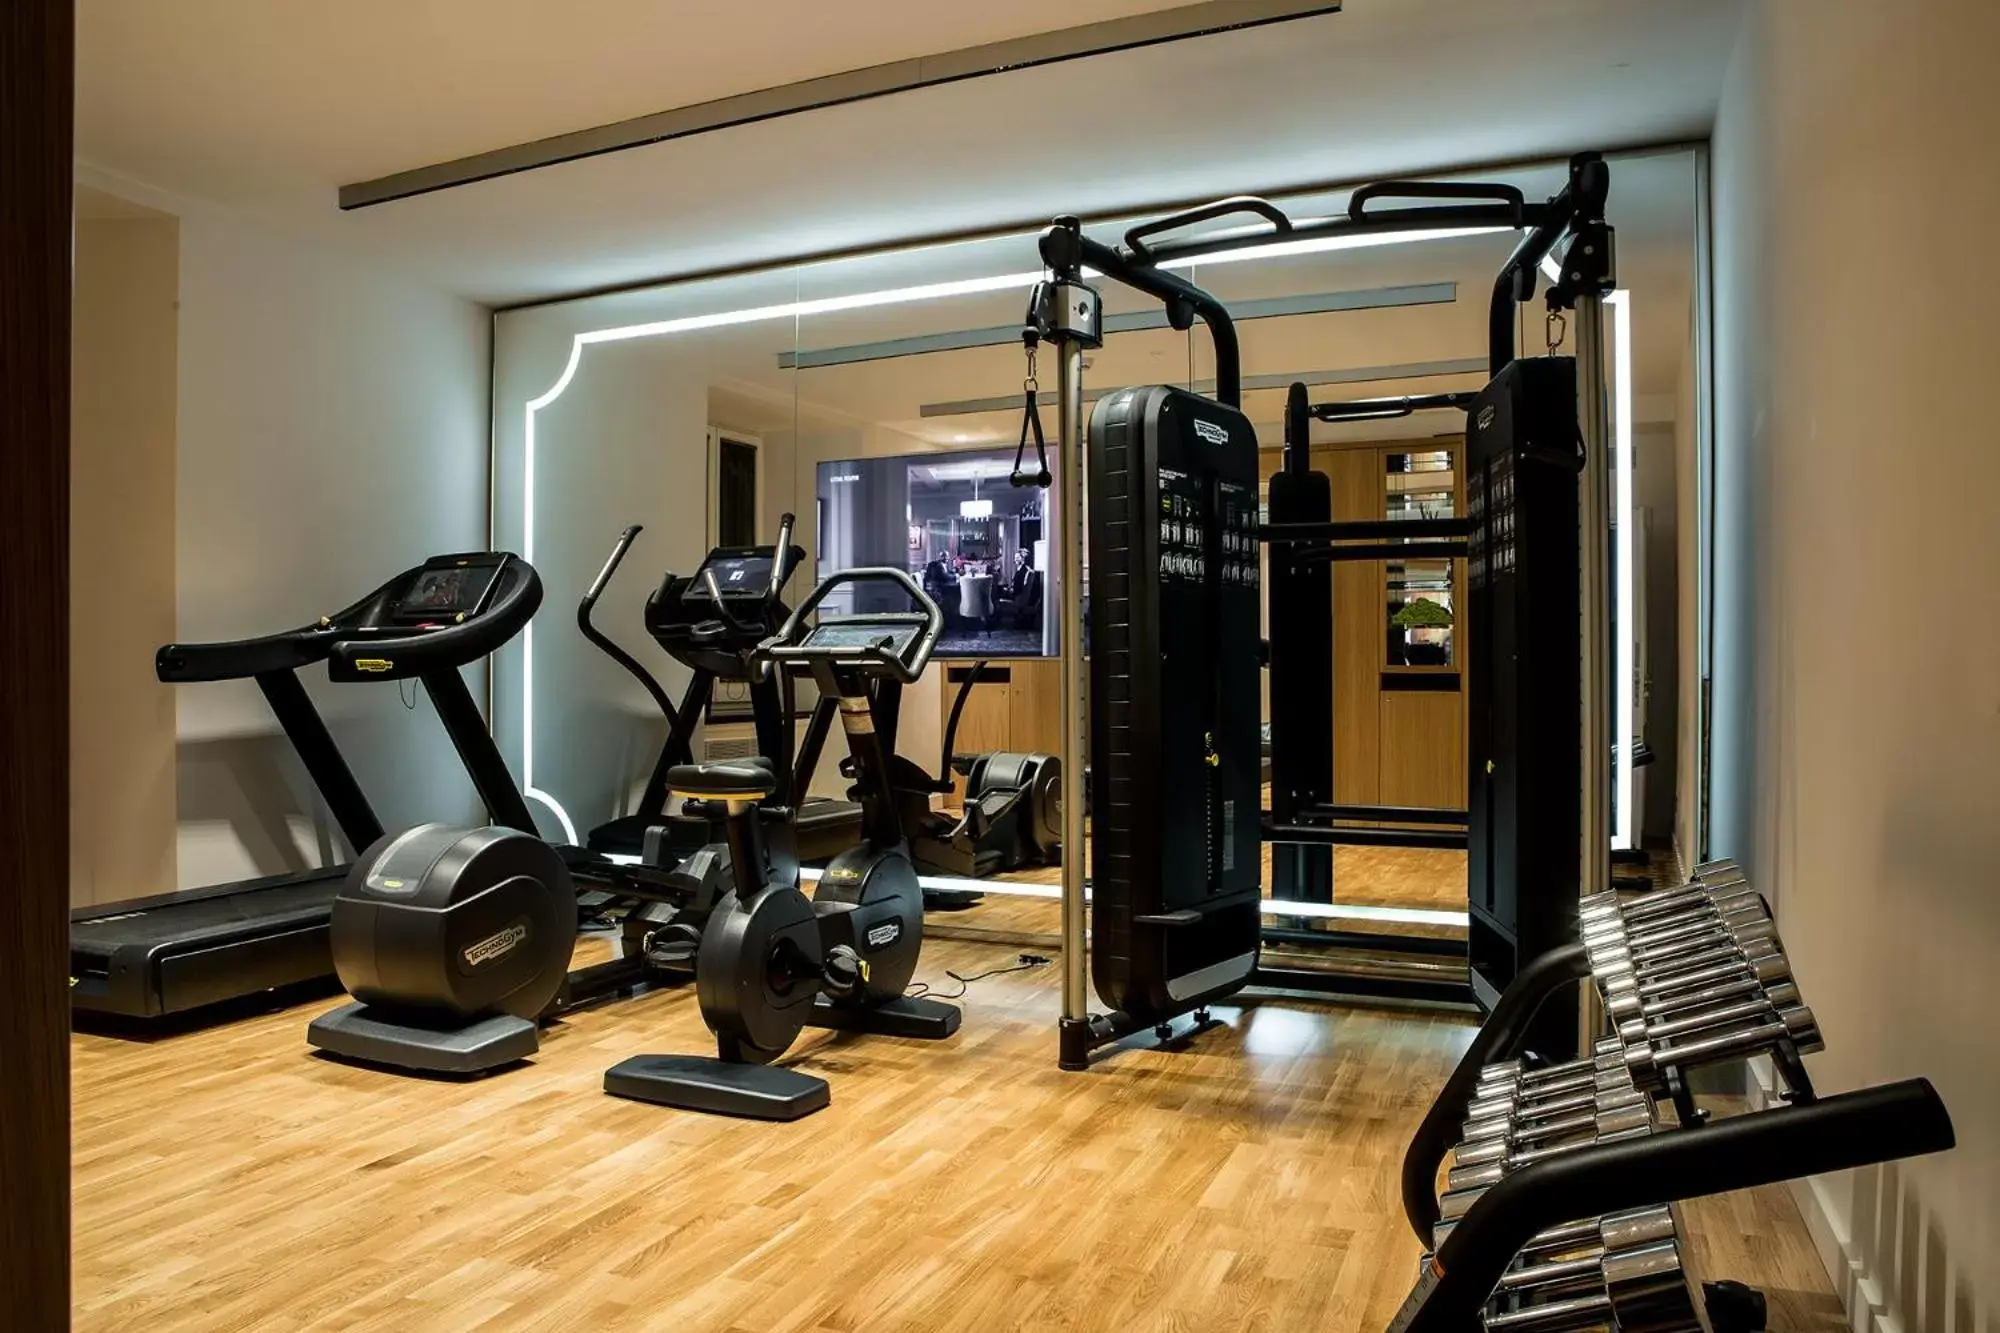 Fitness centre/facilities, Fitness Center/Facilities in Sofitel Roma Villa Borghese